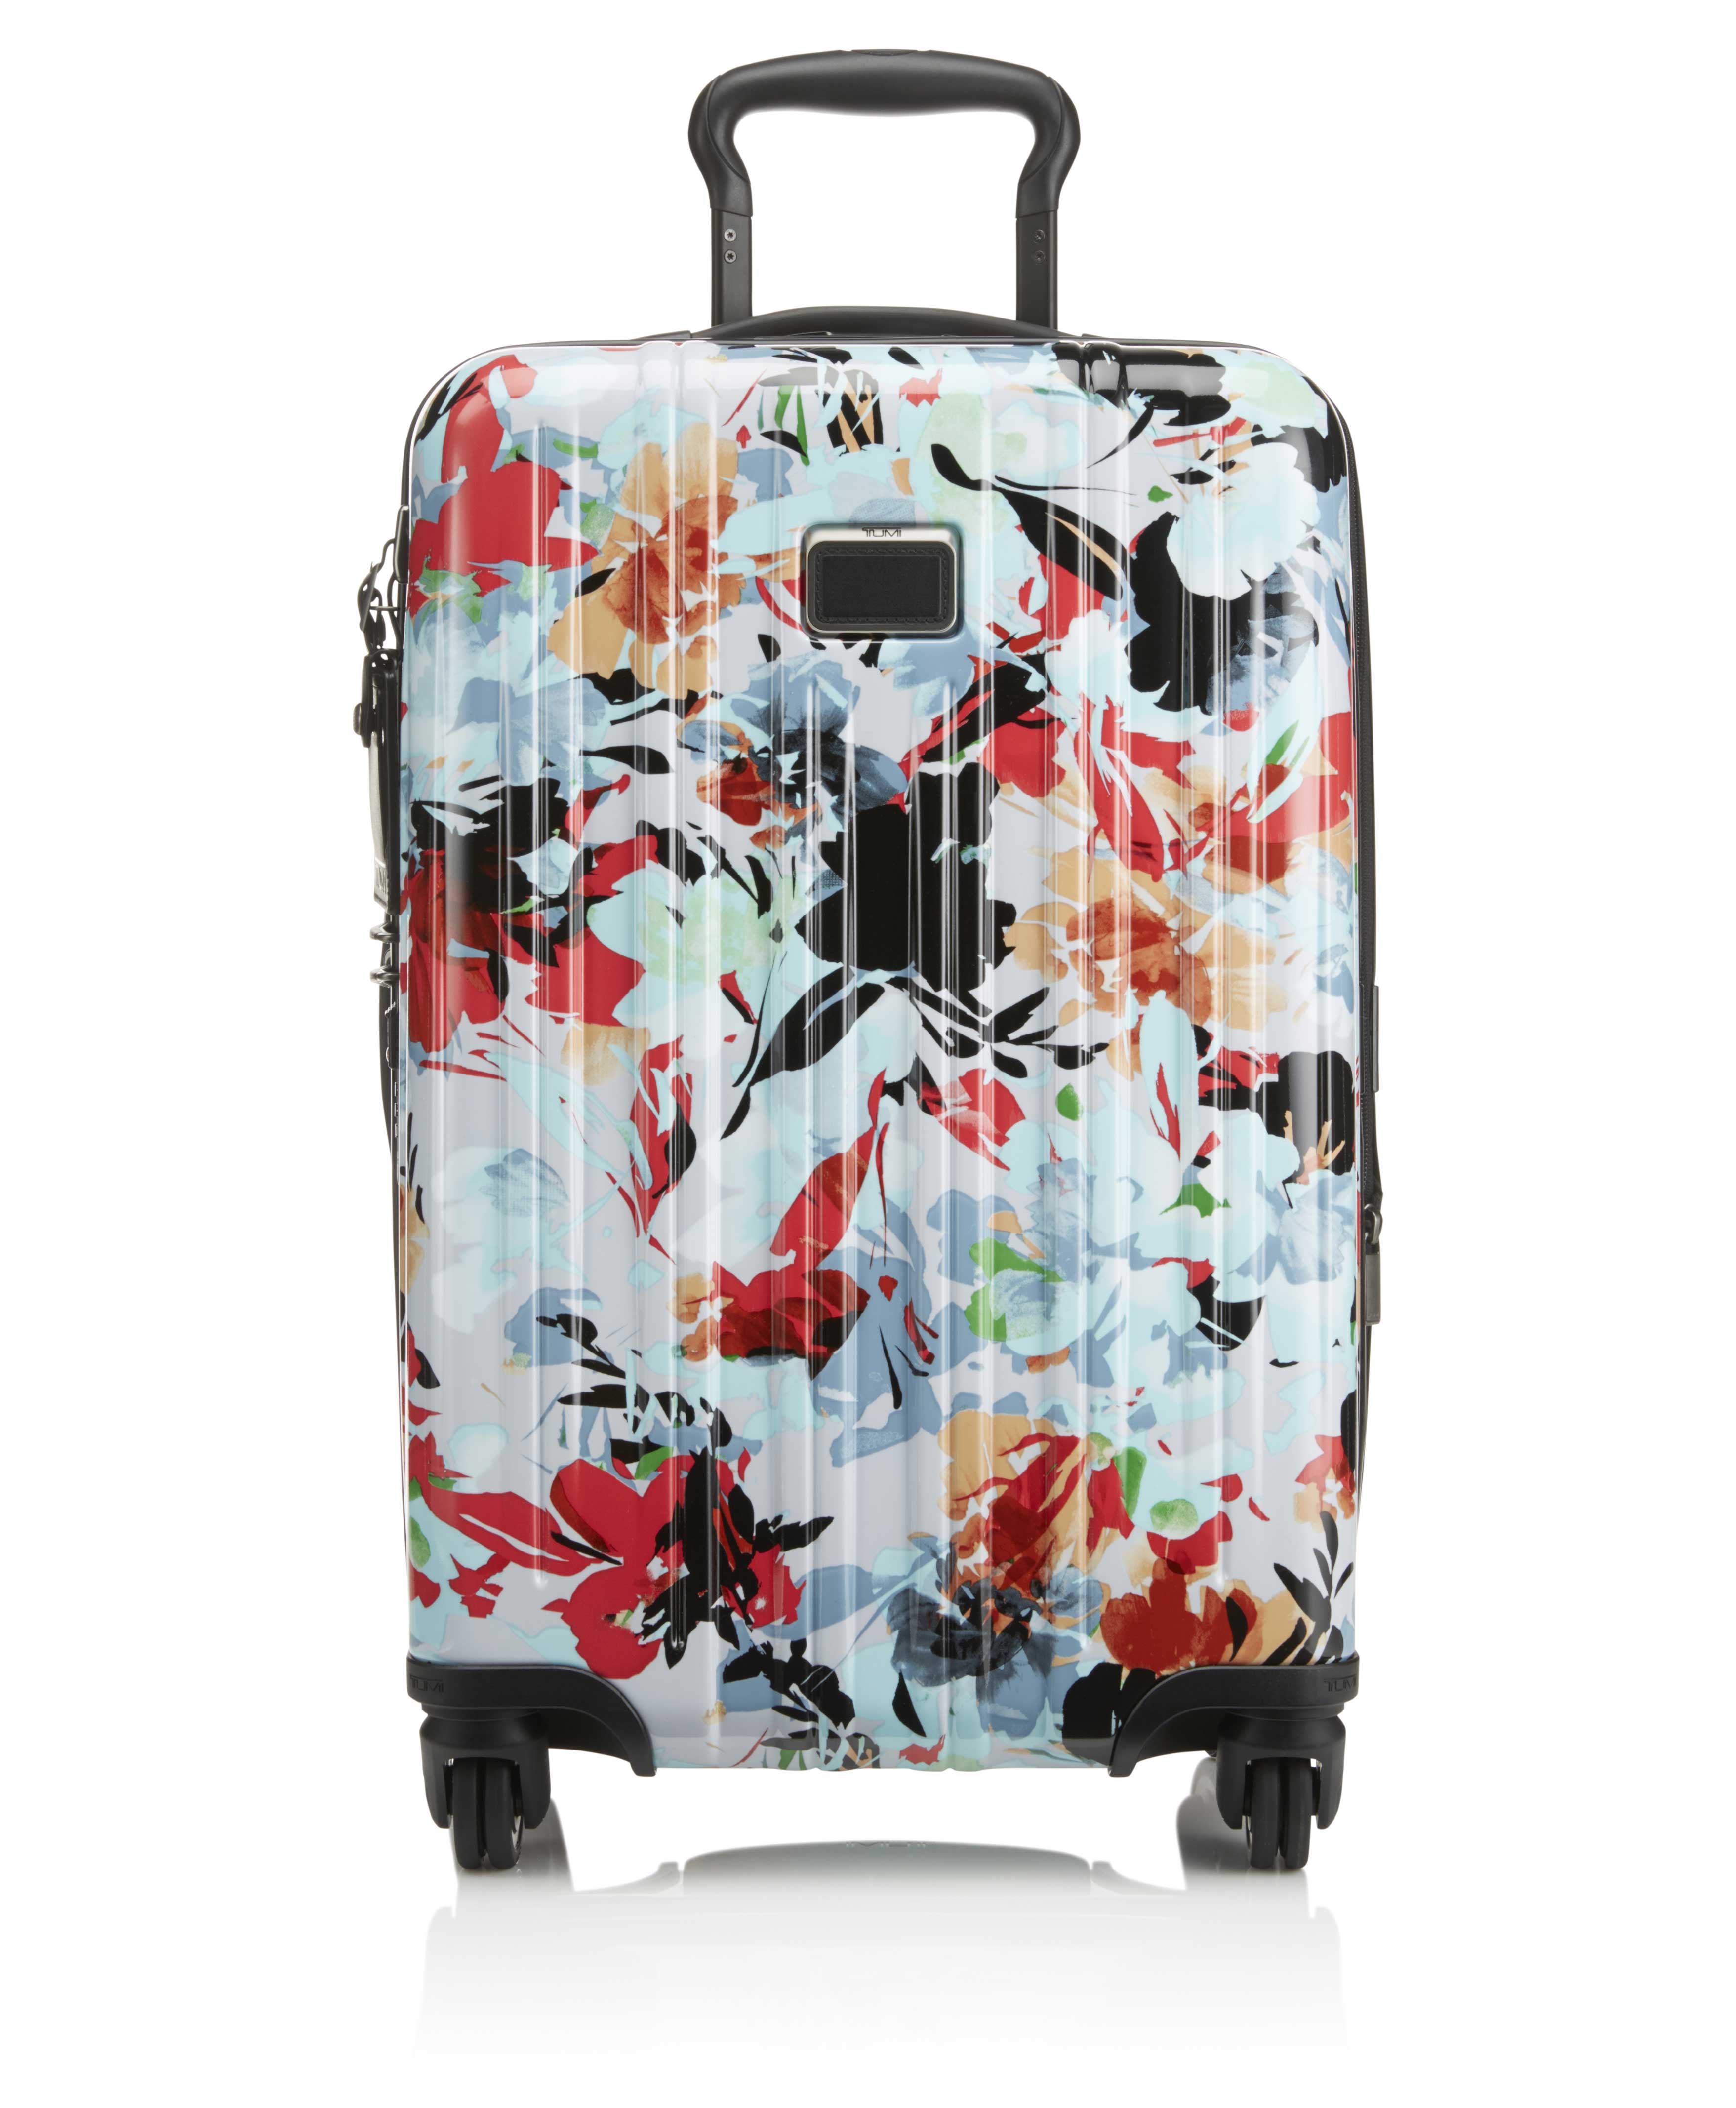 Новая коллекция сумок и аксессуаров бренда Tumi к Песаху